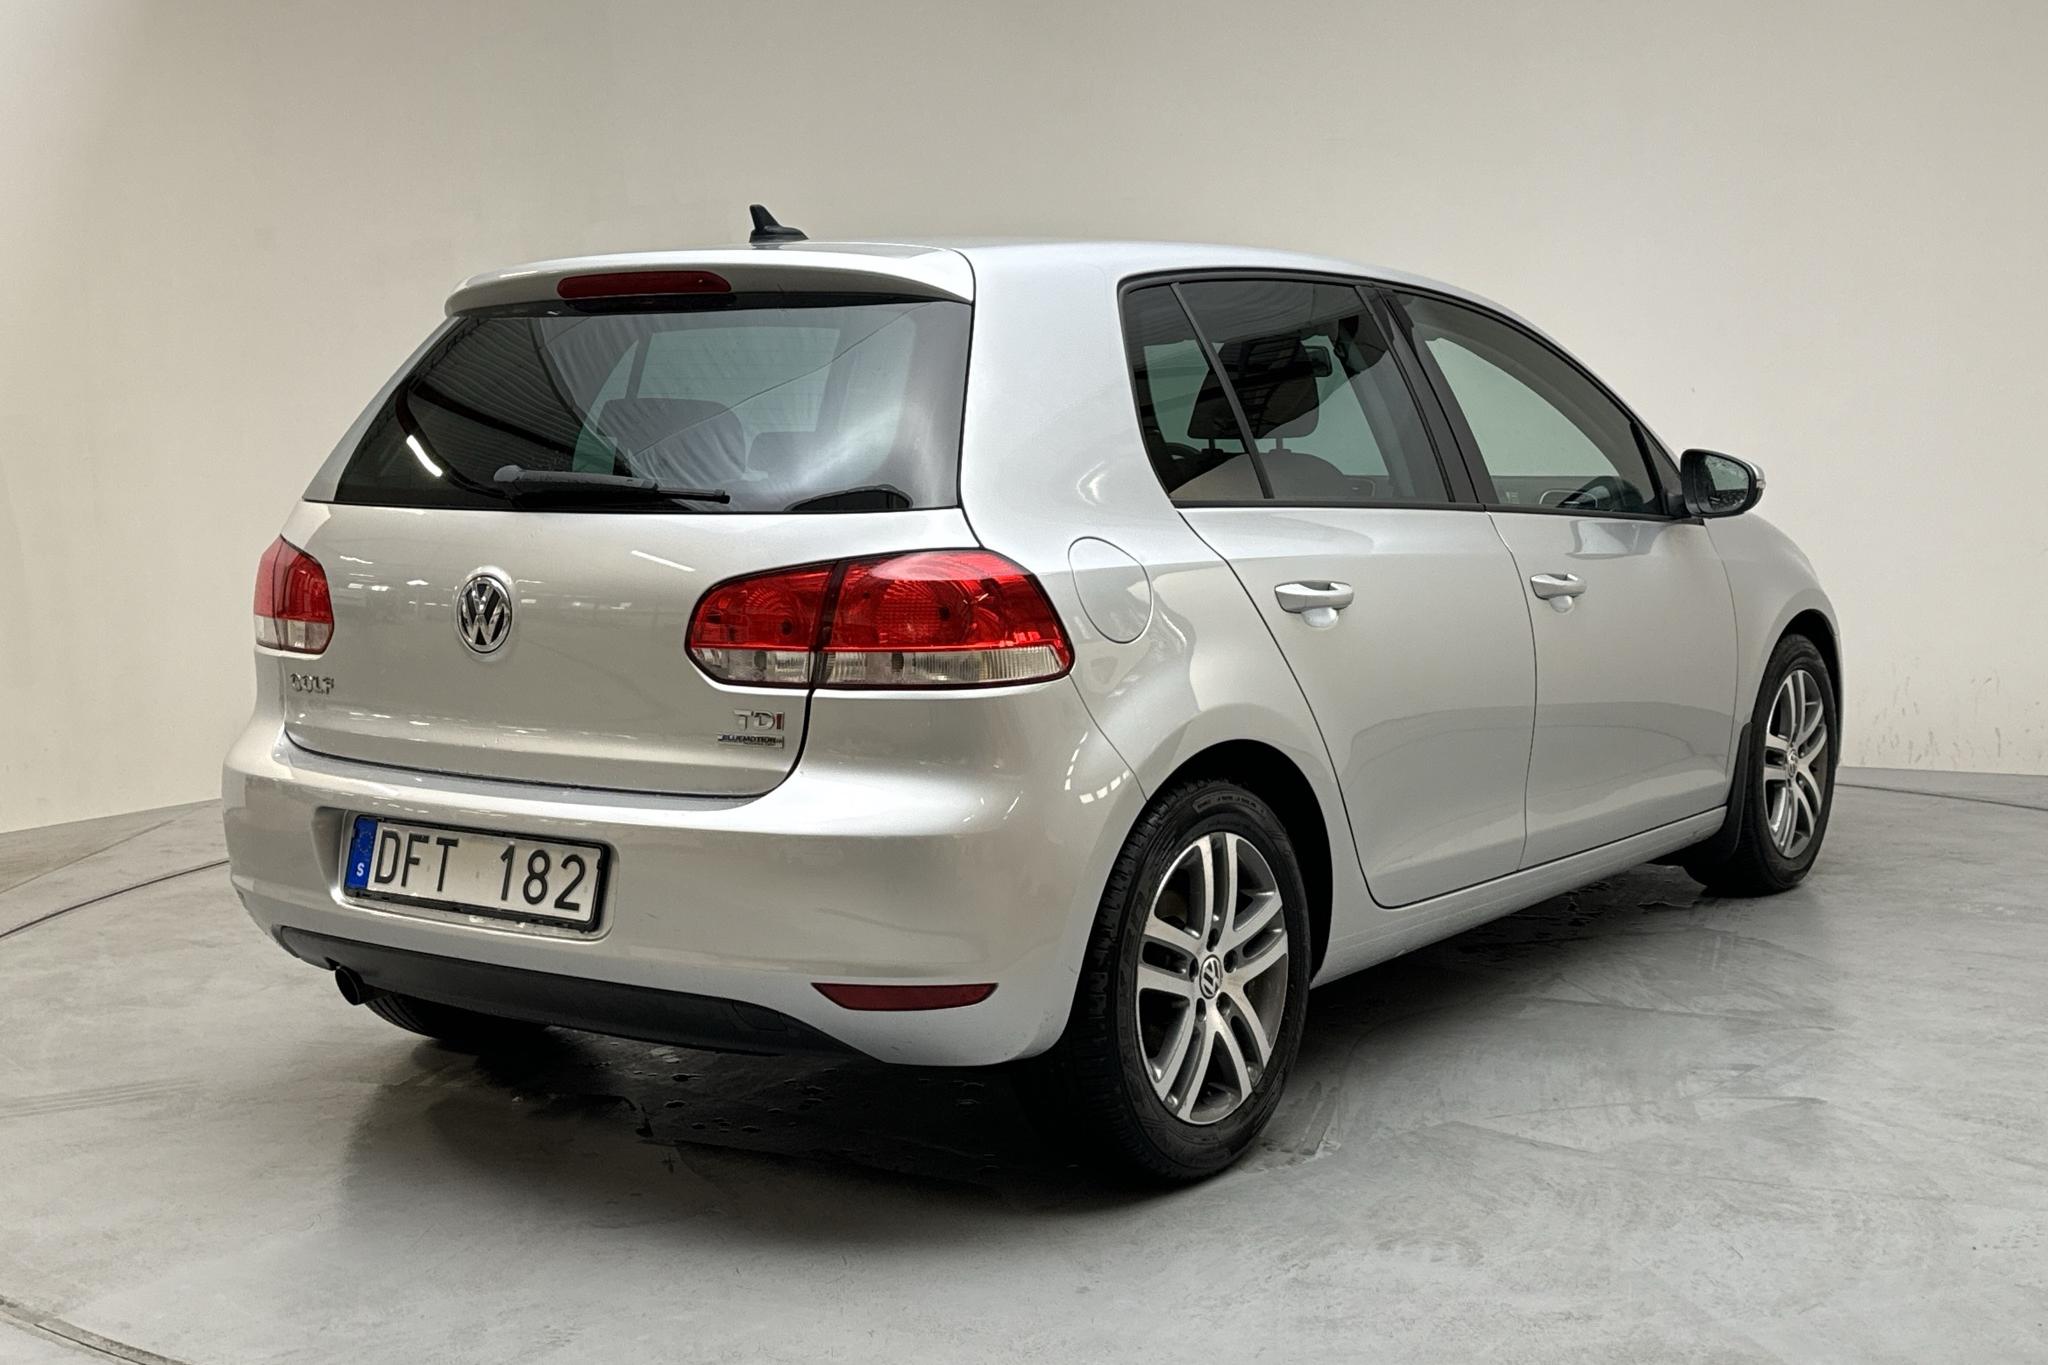 VW Golf VI 1.6 TDI BlueMotion Technology 5dr (105hk) - 68 390 km - Automatyczna - srebro - 2012